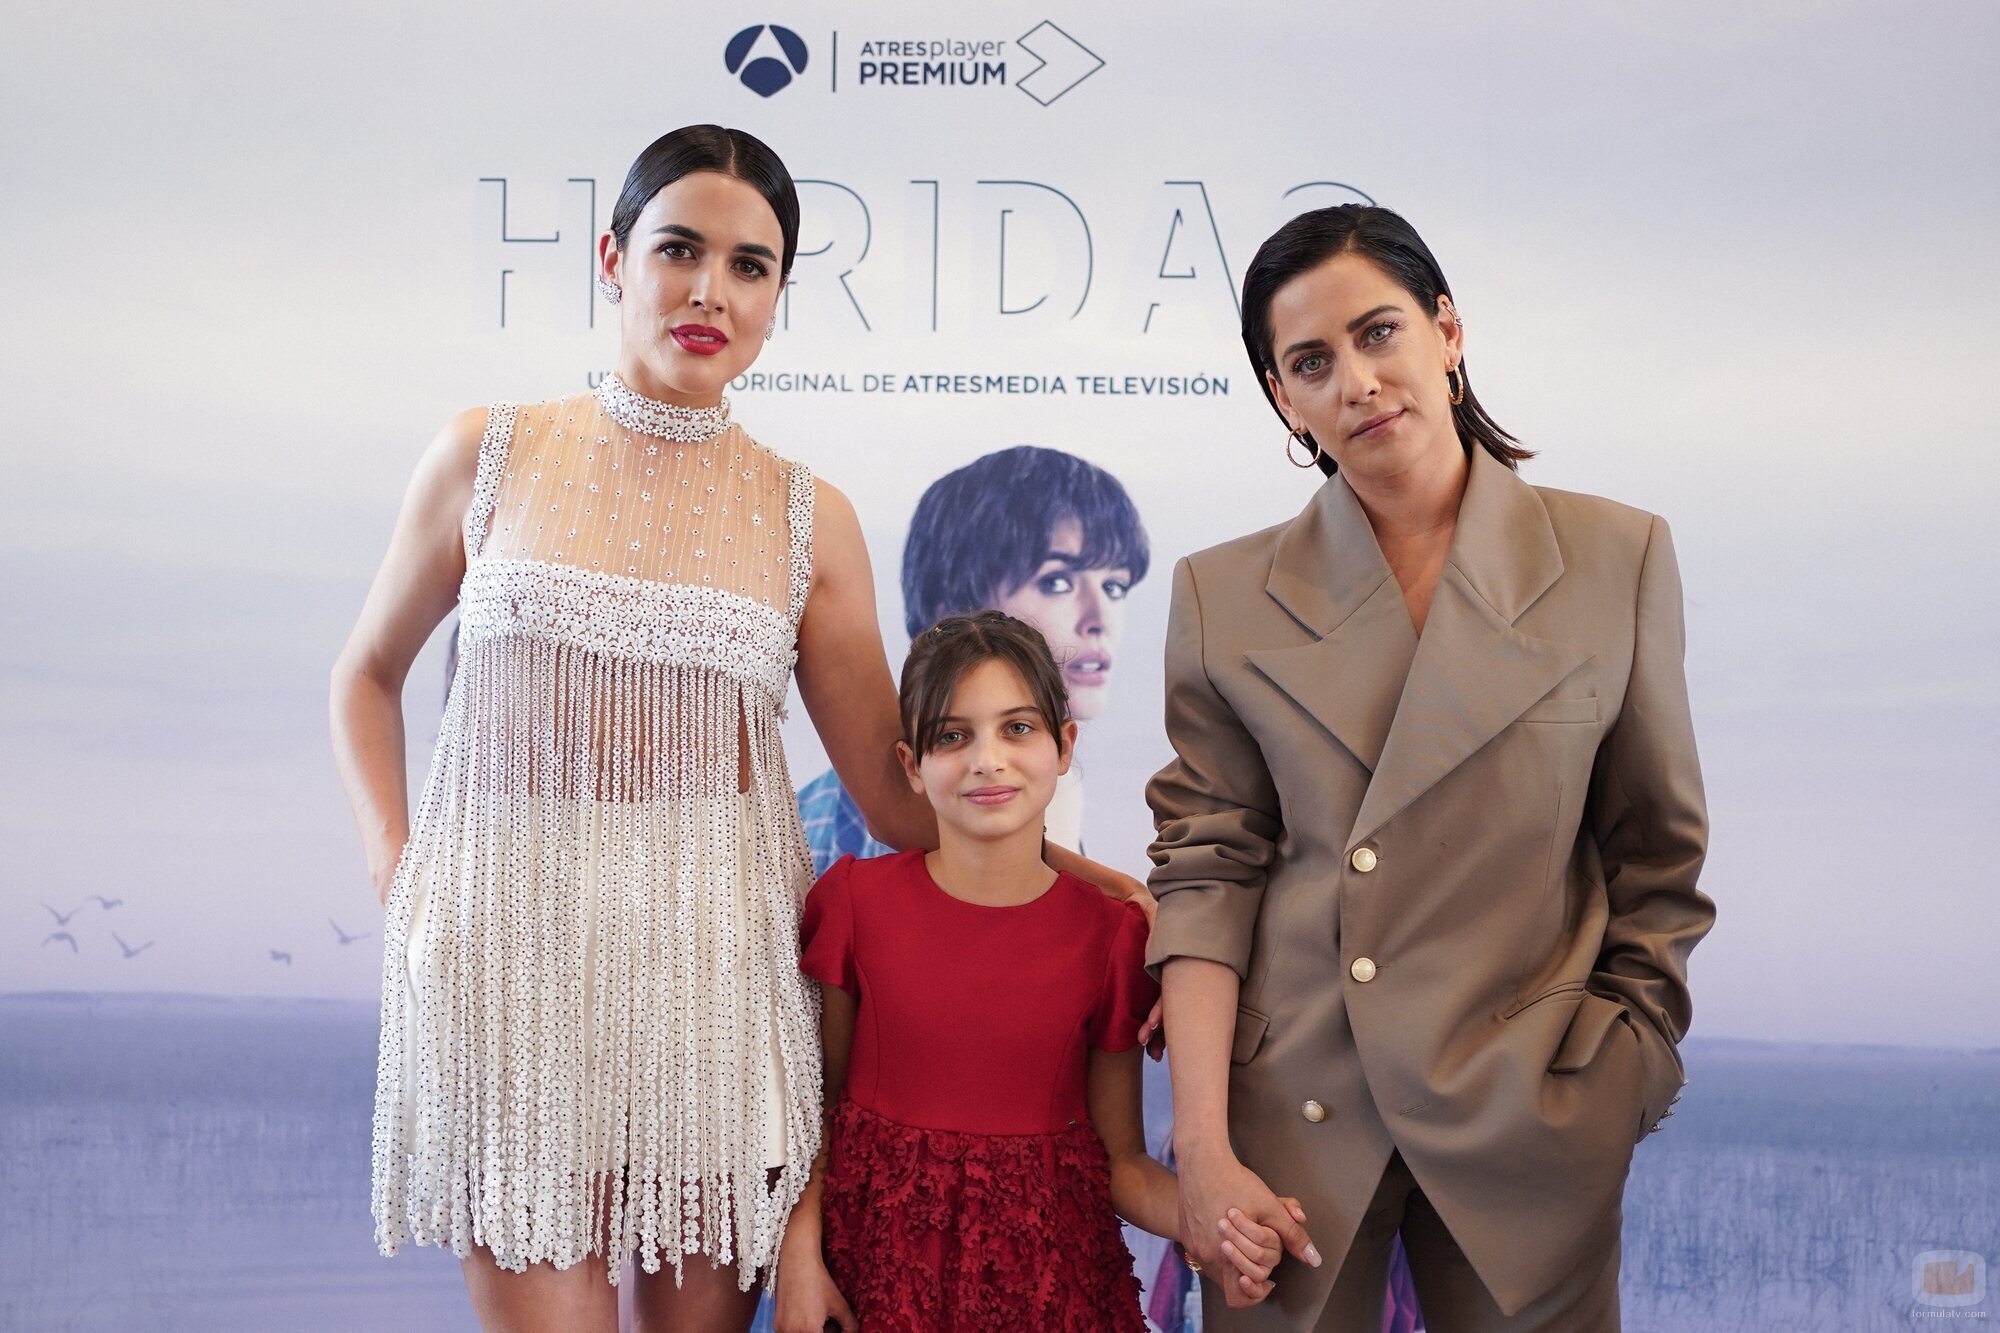 Adriana Ugarte, Cosette Silguero y María León presentan 'Heridas' en el 25 Festival de Málaga